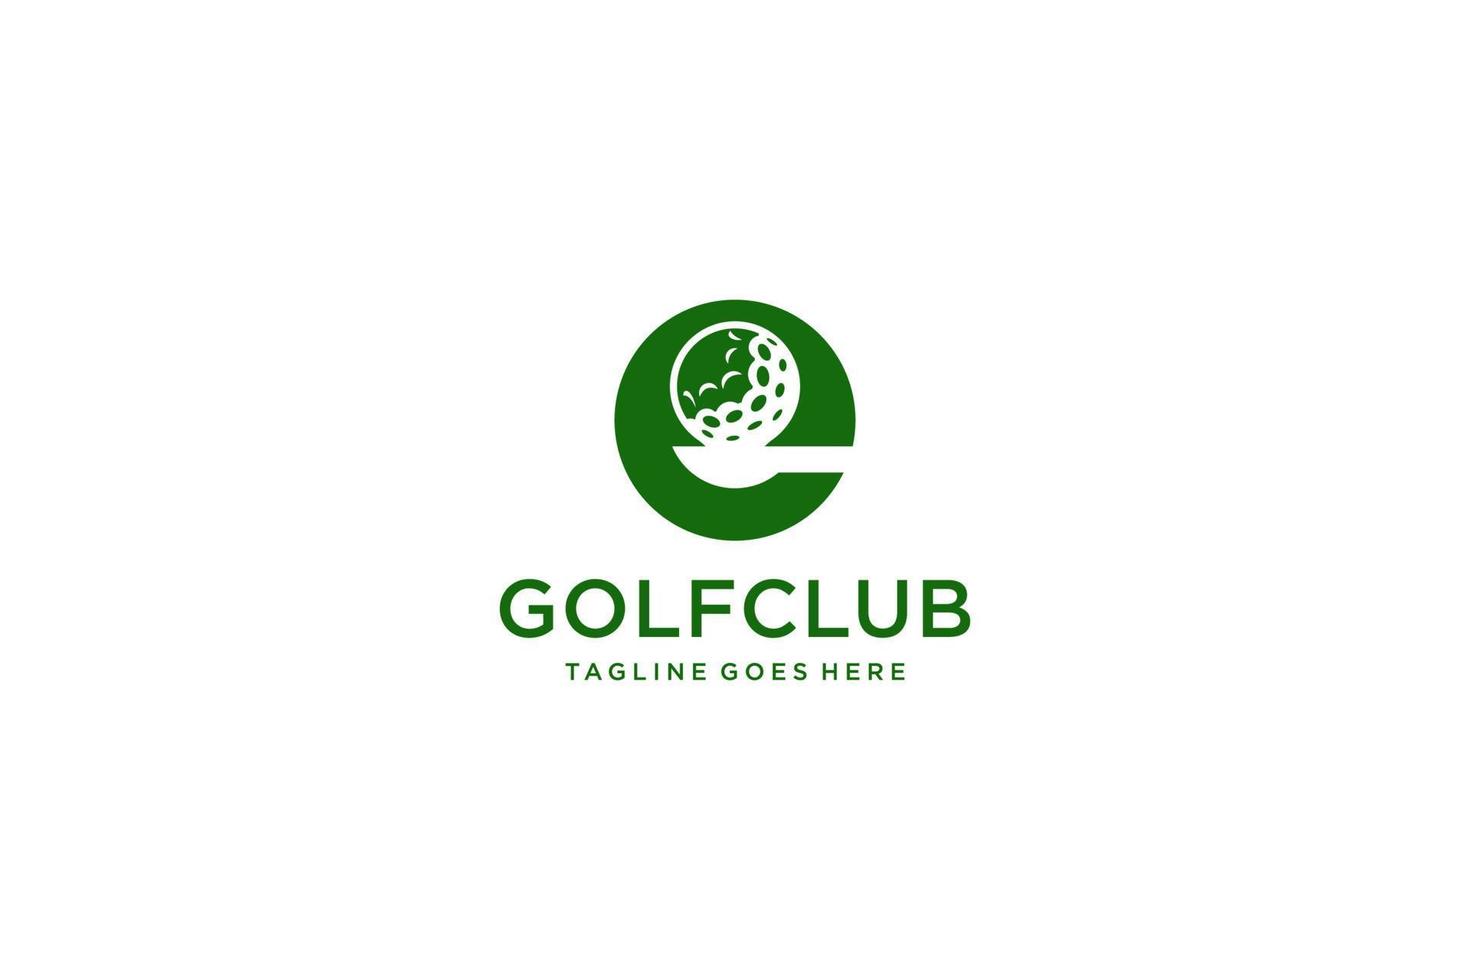 Letter E for Golf logo design vector template, Vector label of golf, Logo of golf championship, illustration, Creative icon, design concept